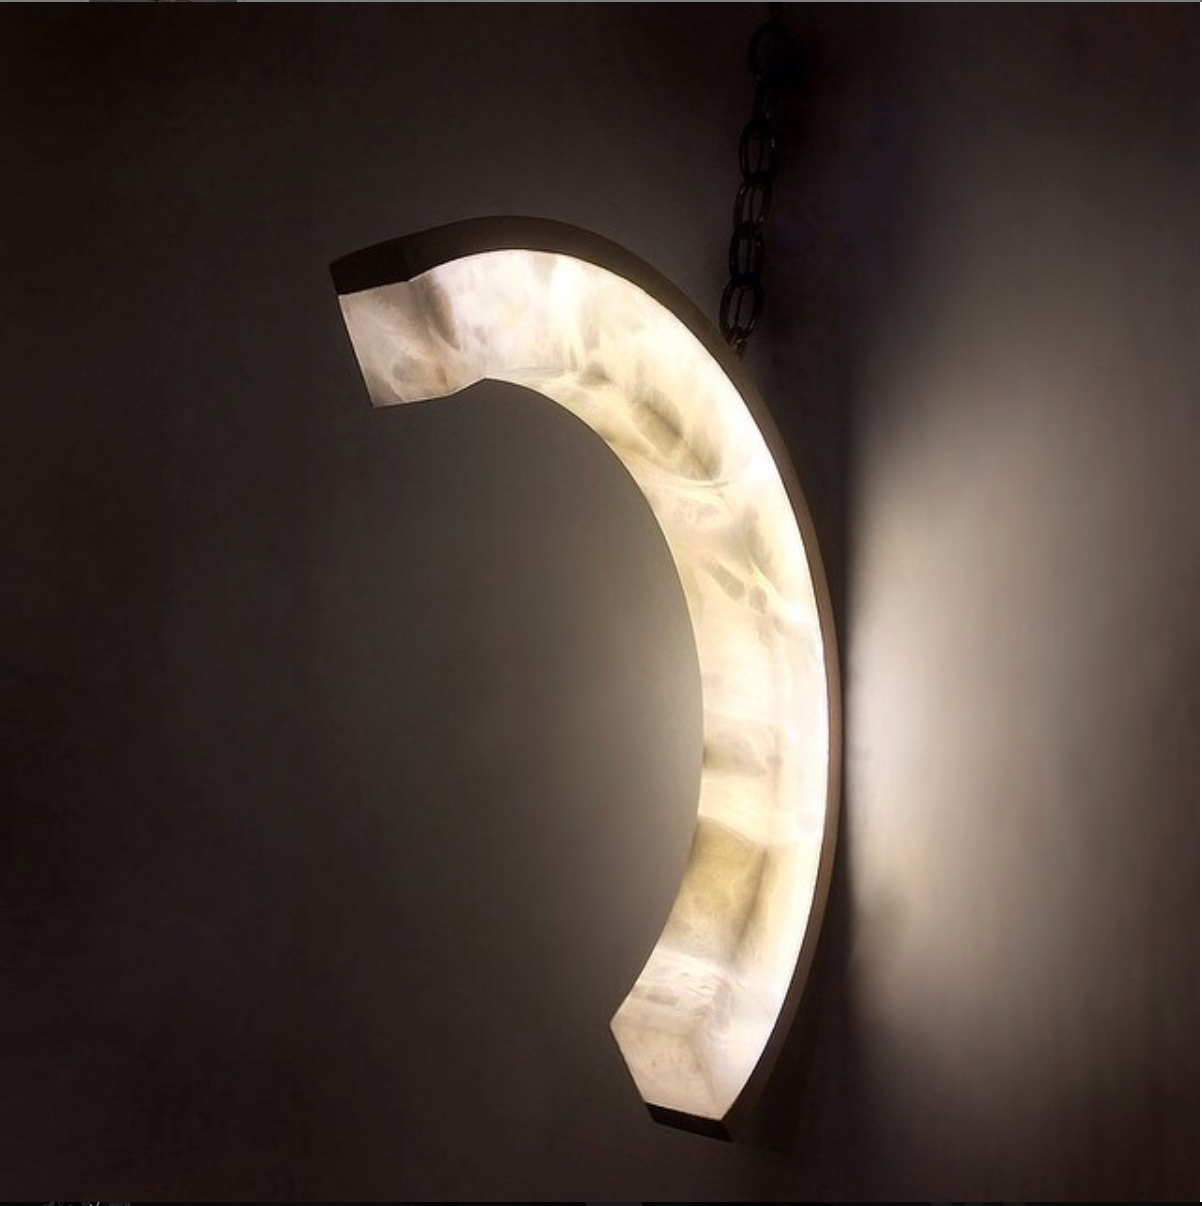 Elegant C-Shaped Alabaster Wall Light, Illuminating Beauty and Style